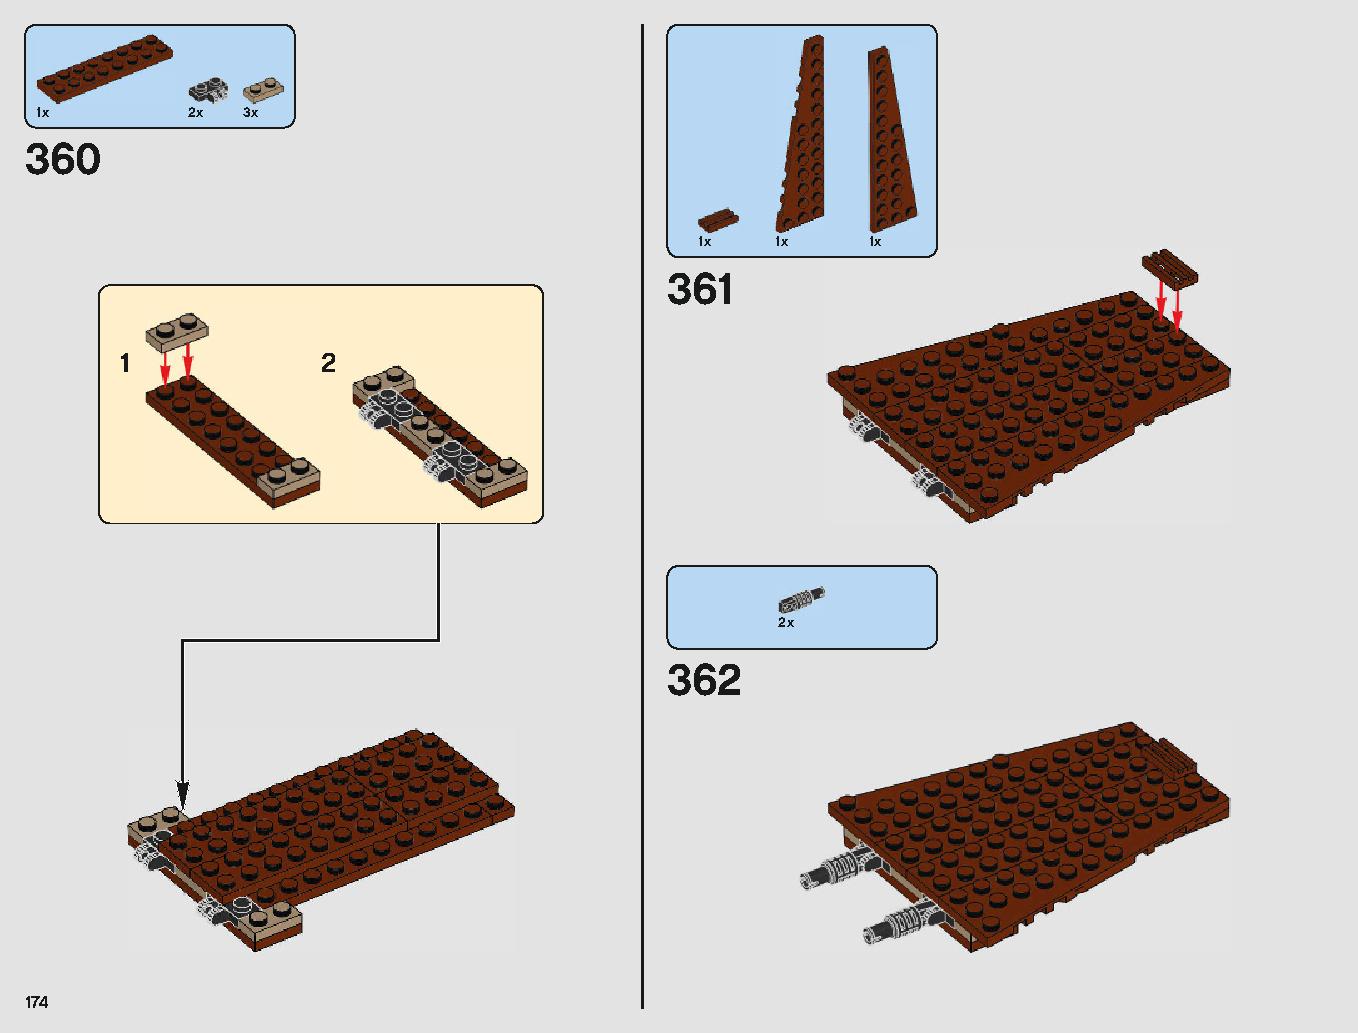 Sandcrawler 75220 LEGO information LEGO instructions 174 page